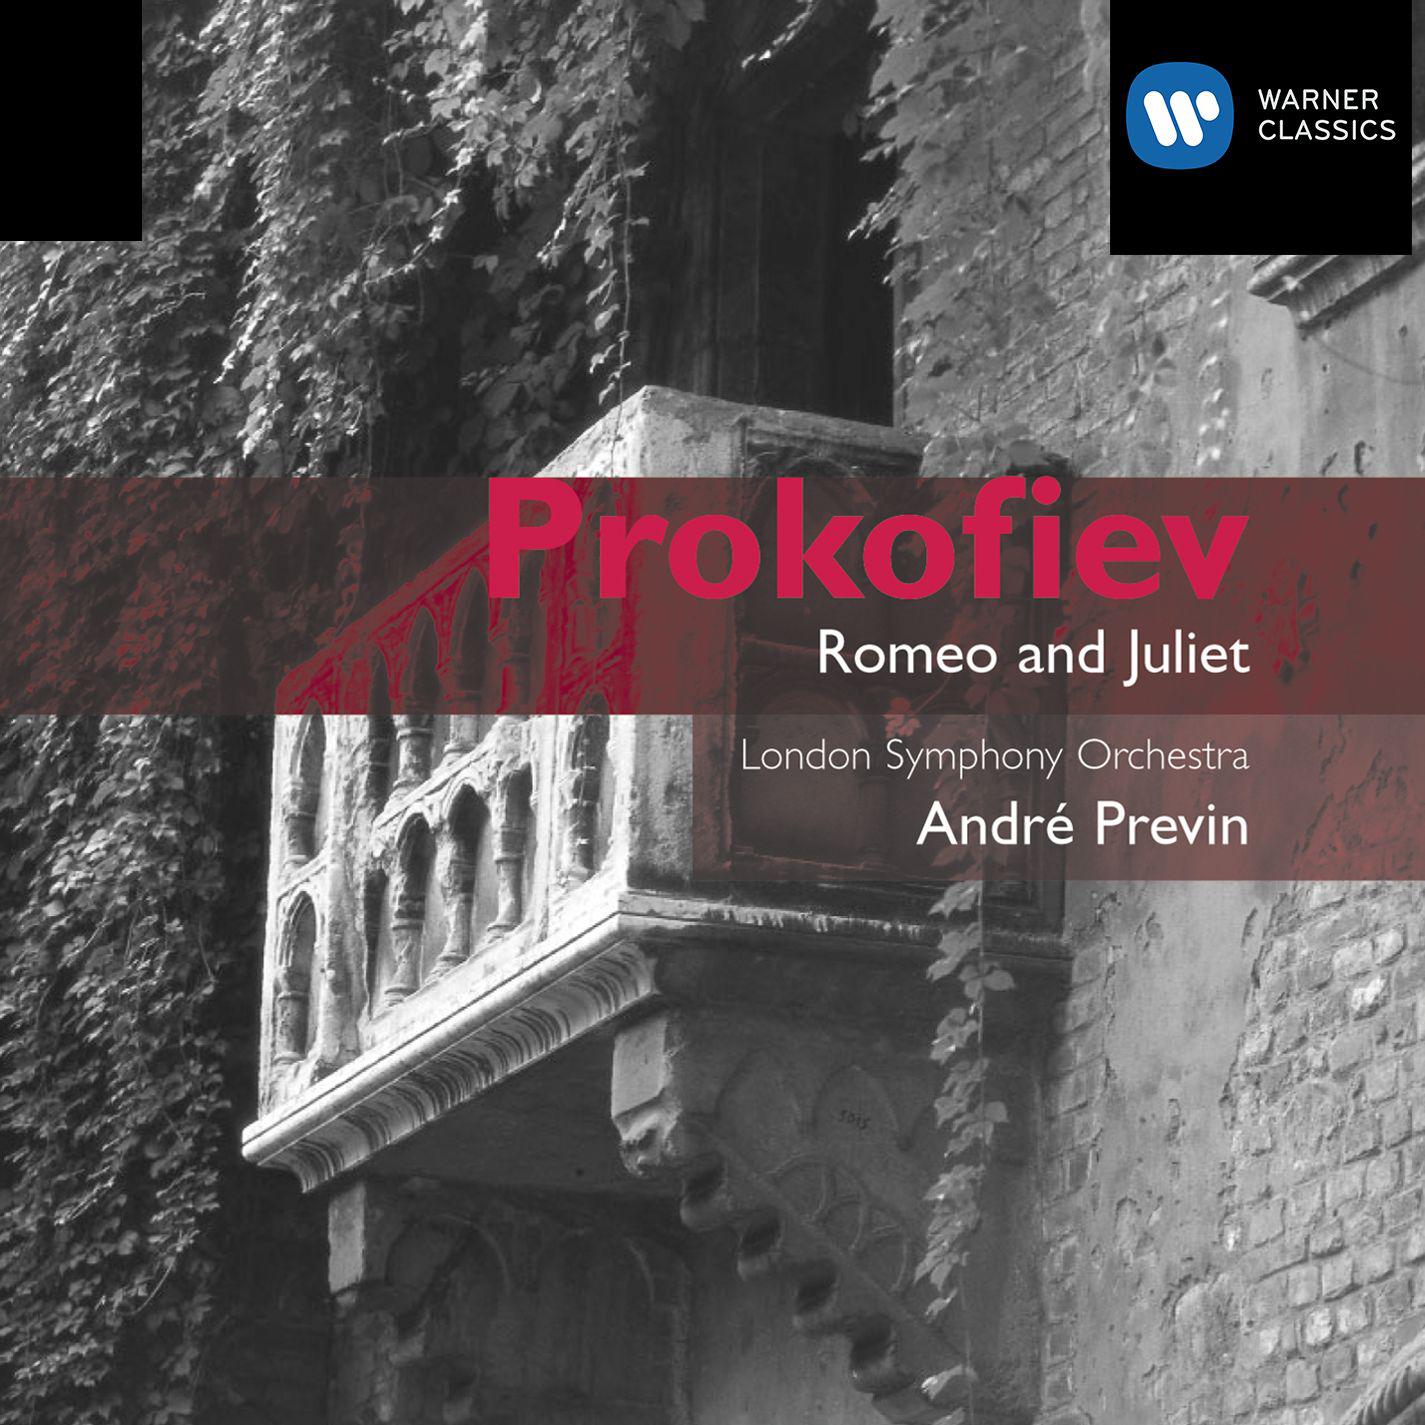 Romeo and Juliet (Complete Ballet), Op. 64, Act 3:No. 38, Romeo and Juliet (Juliet's Bedroom)